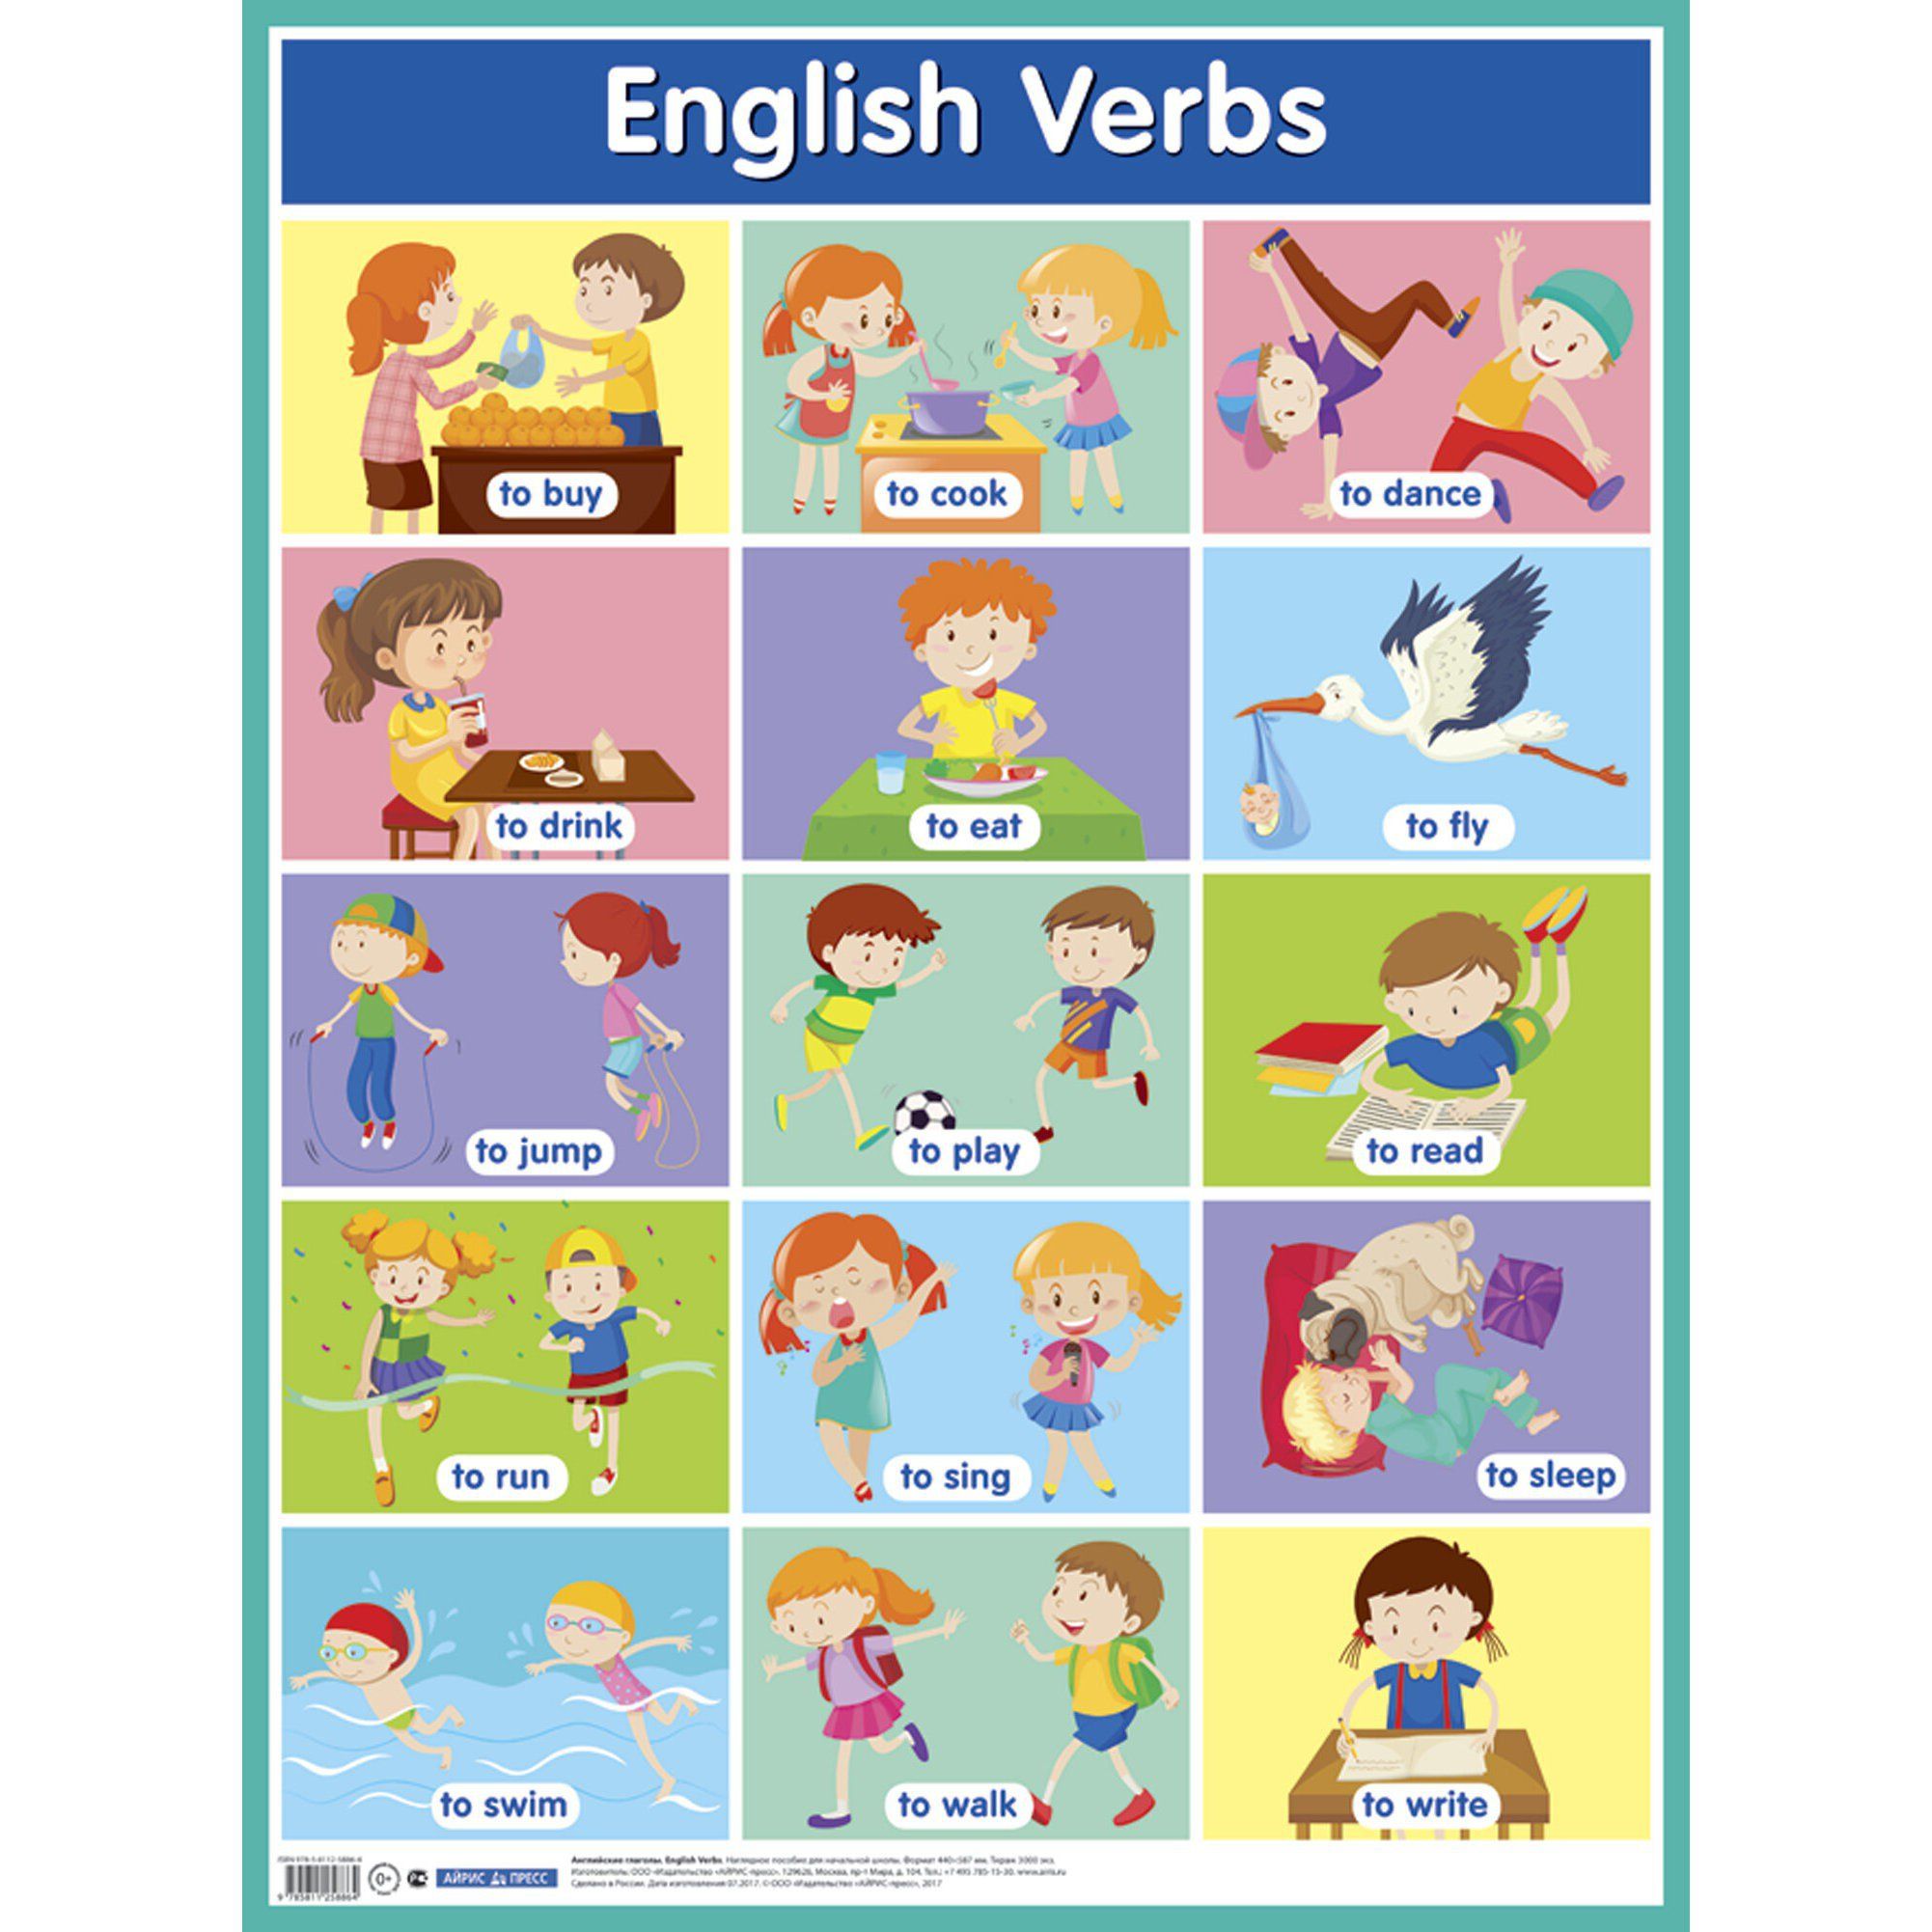 Изучаем английские глаголы. Глаголы на английском для детей. Глаголы в английском языке для детей. Английские глаголы в картинках. Английские глаголы для дошкольников.